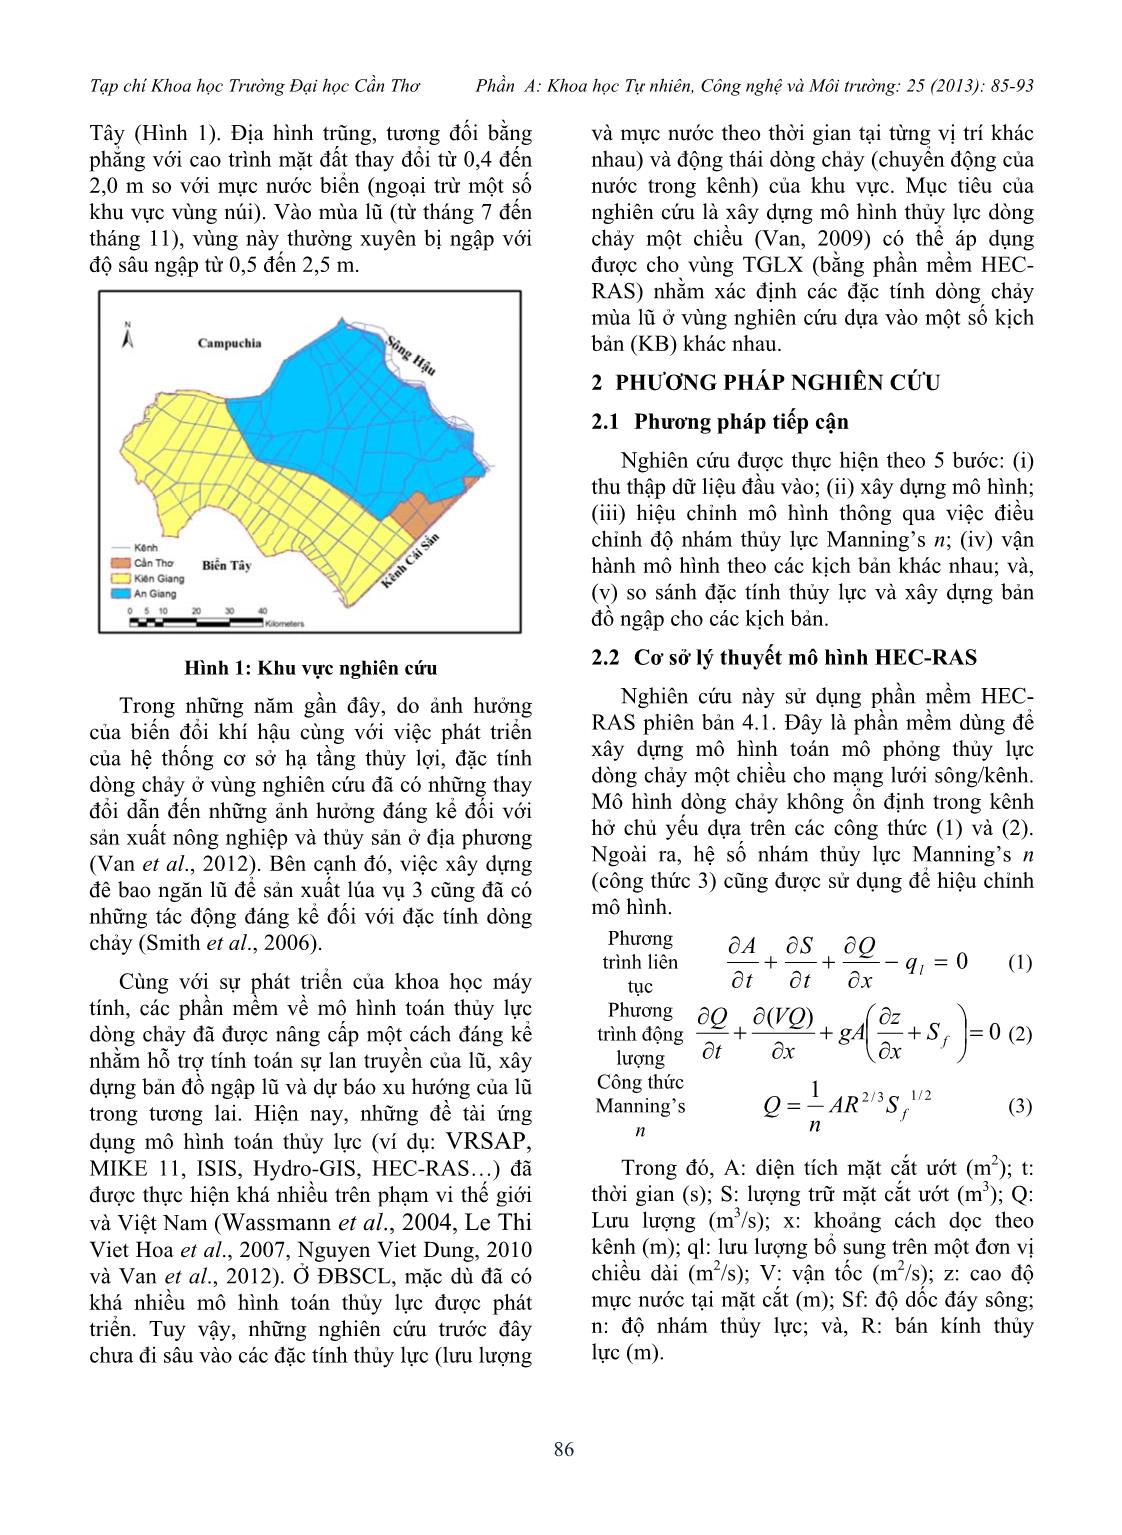 Động thái dòng chảy ở vùng tứ giác Long Xuyên dưới tác động của đê bao ngăn lũ trang 2